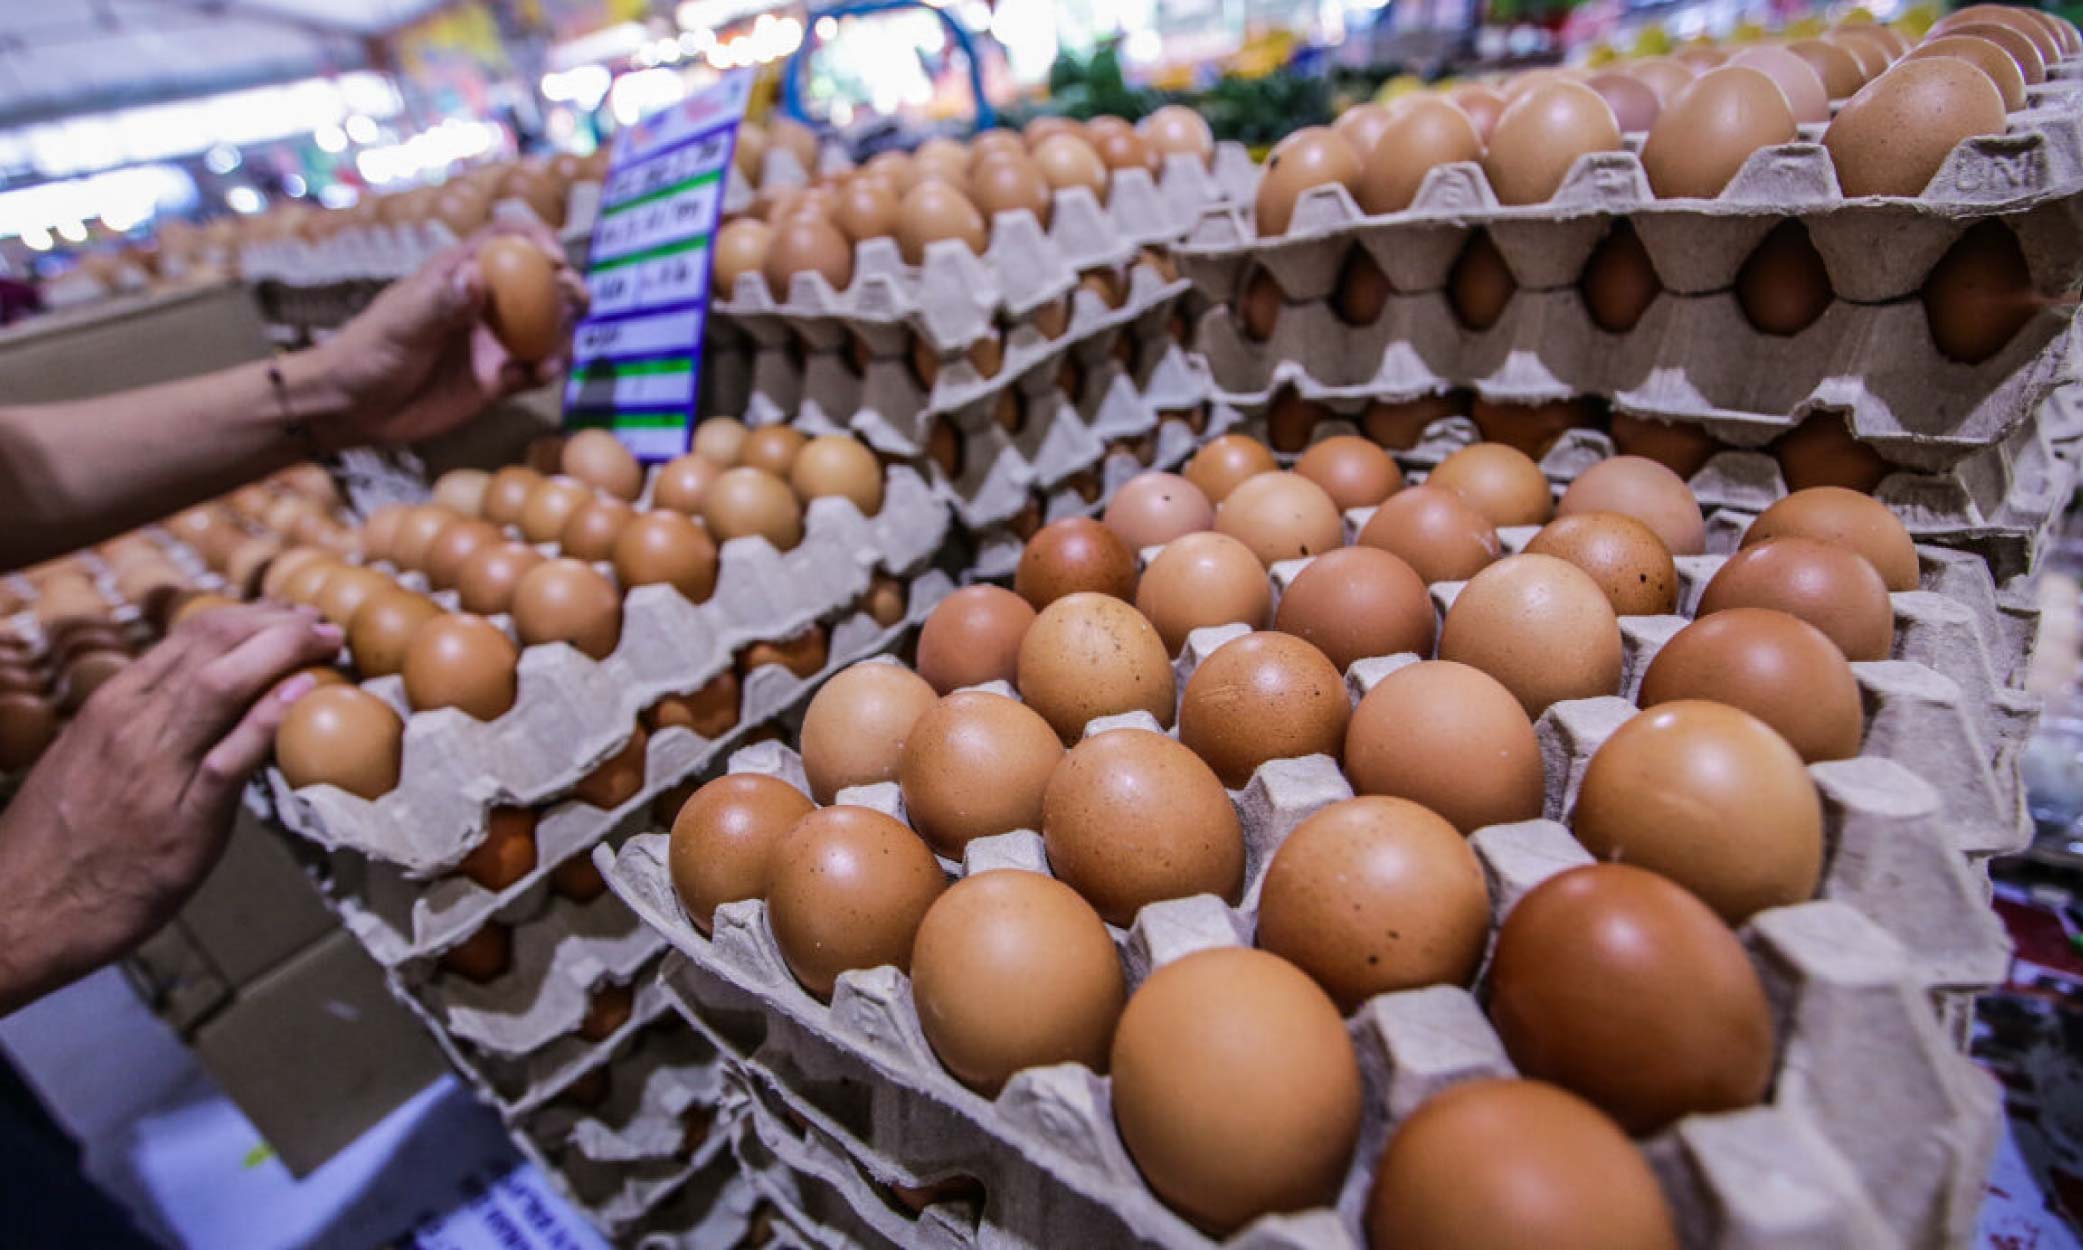 bekalan telur ayam di kelantan belum stabil sukar diperoleh di pasaran